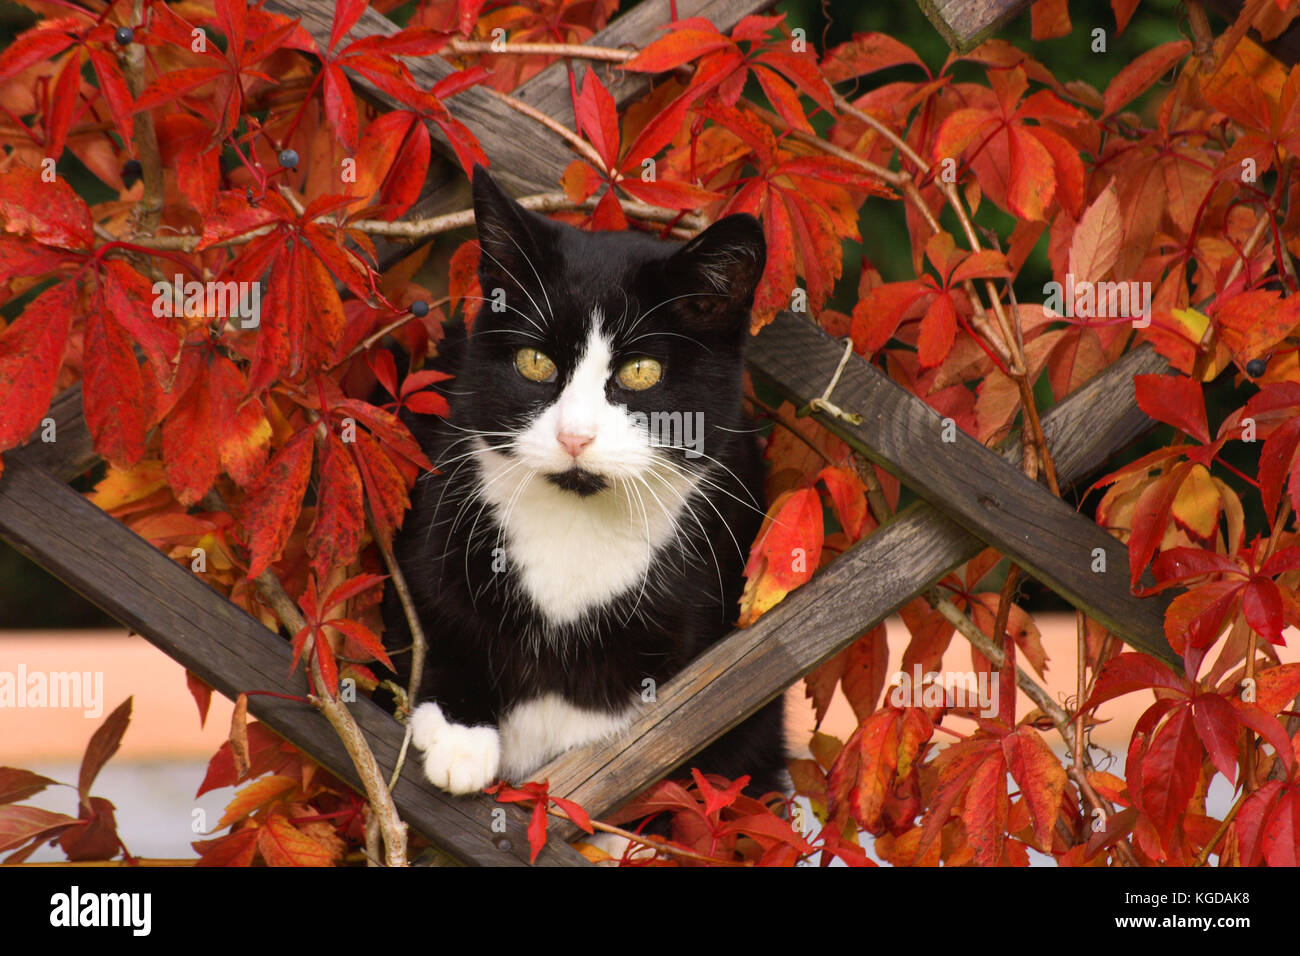 domestic cat, tuxedo, in autuum leaves Stock Photo